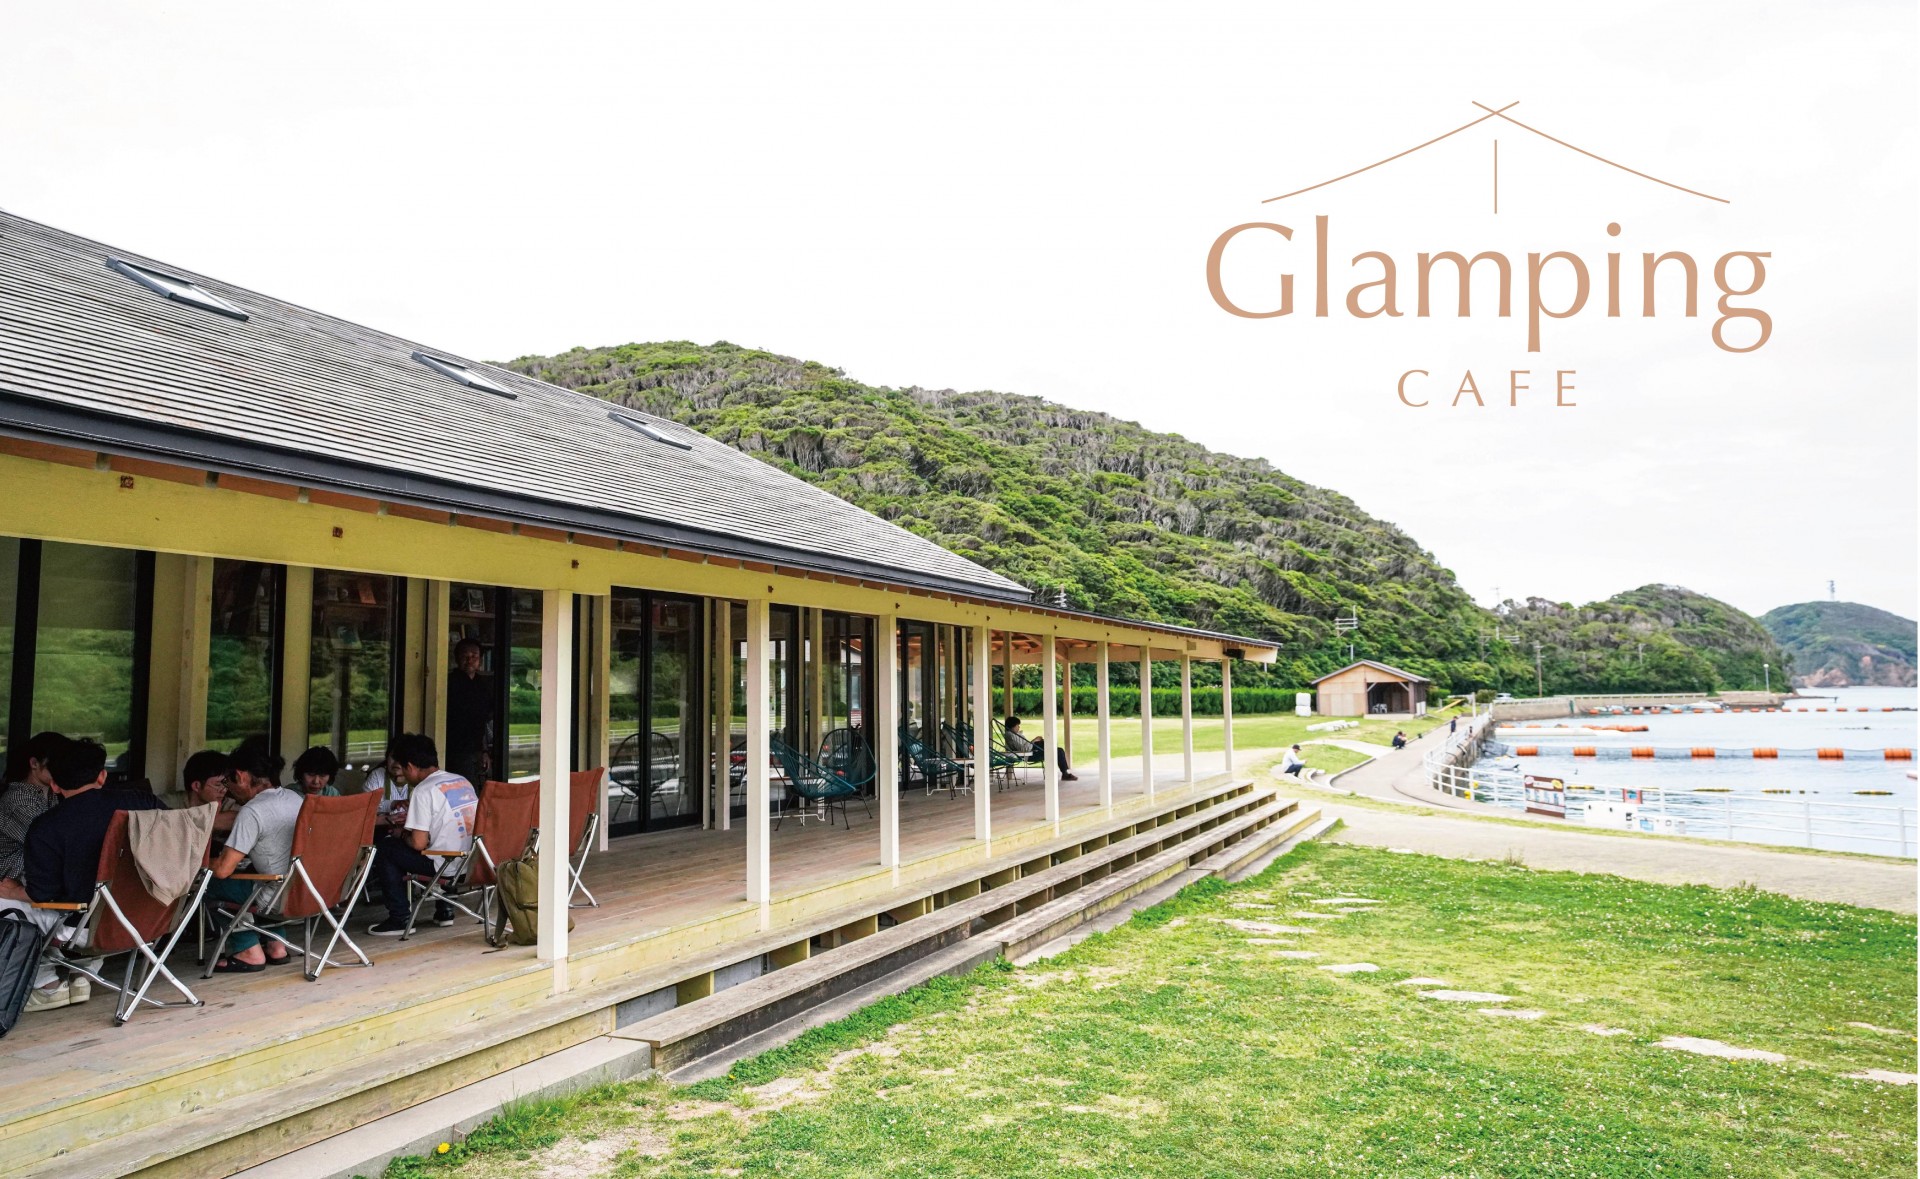 Glamping Cafe